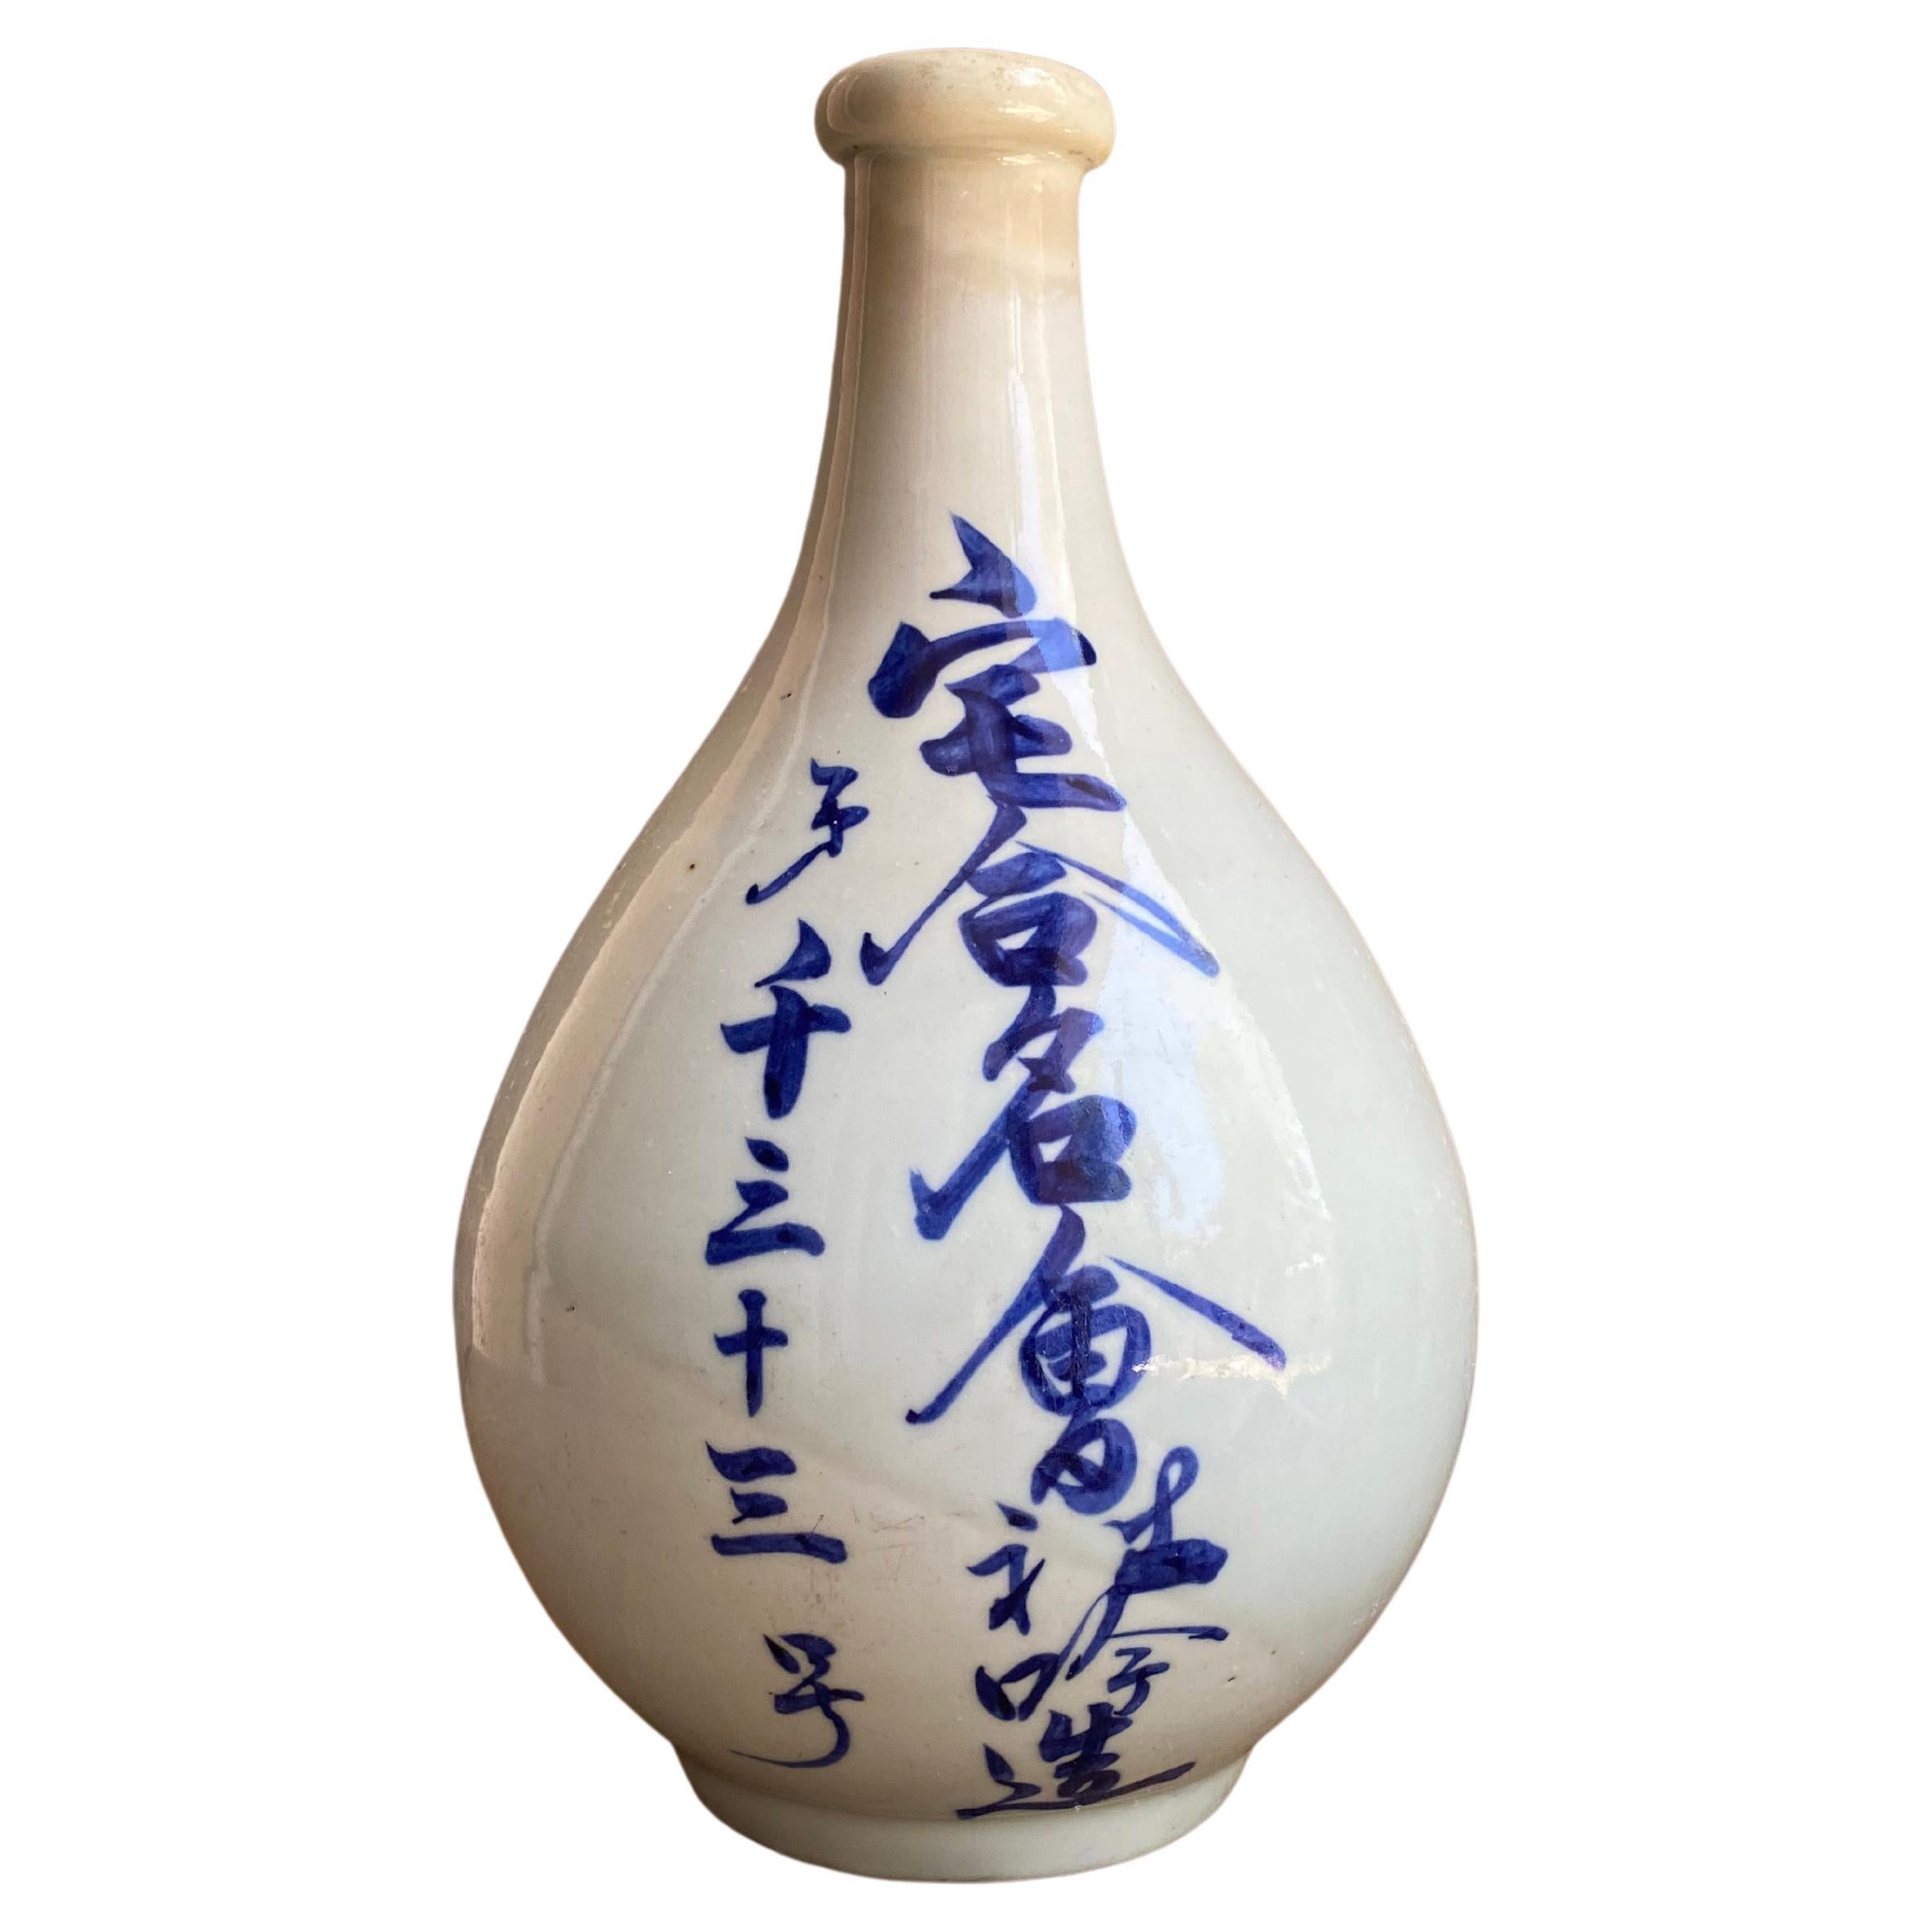 Japanische Sakeflasche aus japanischer Keramik mit handbemalten Zeichen, frühes 20. Jahrhundert